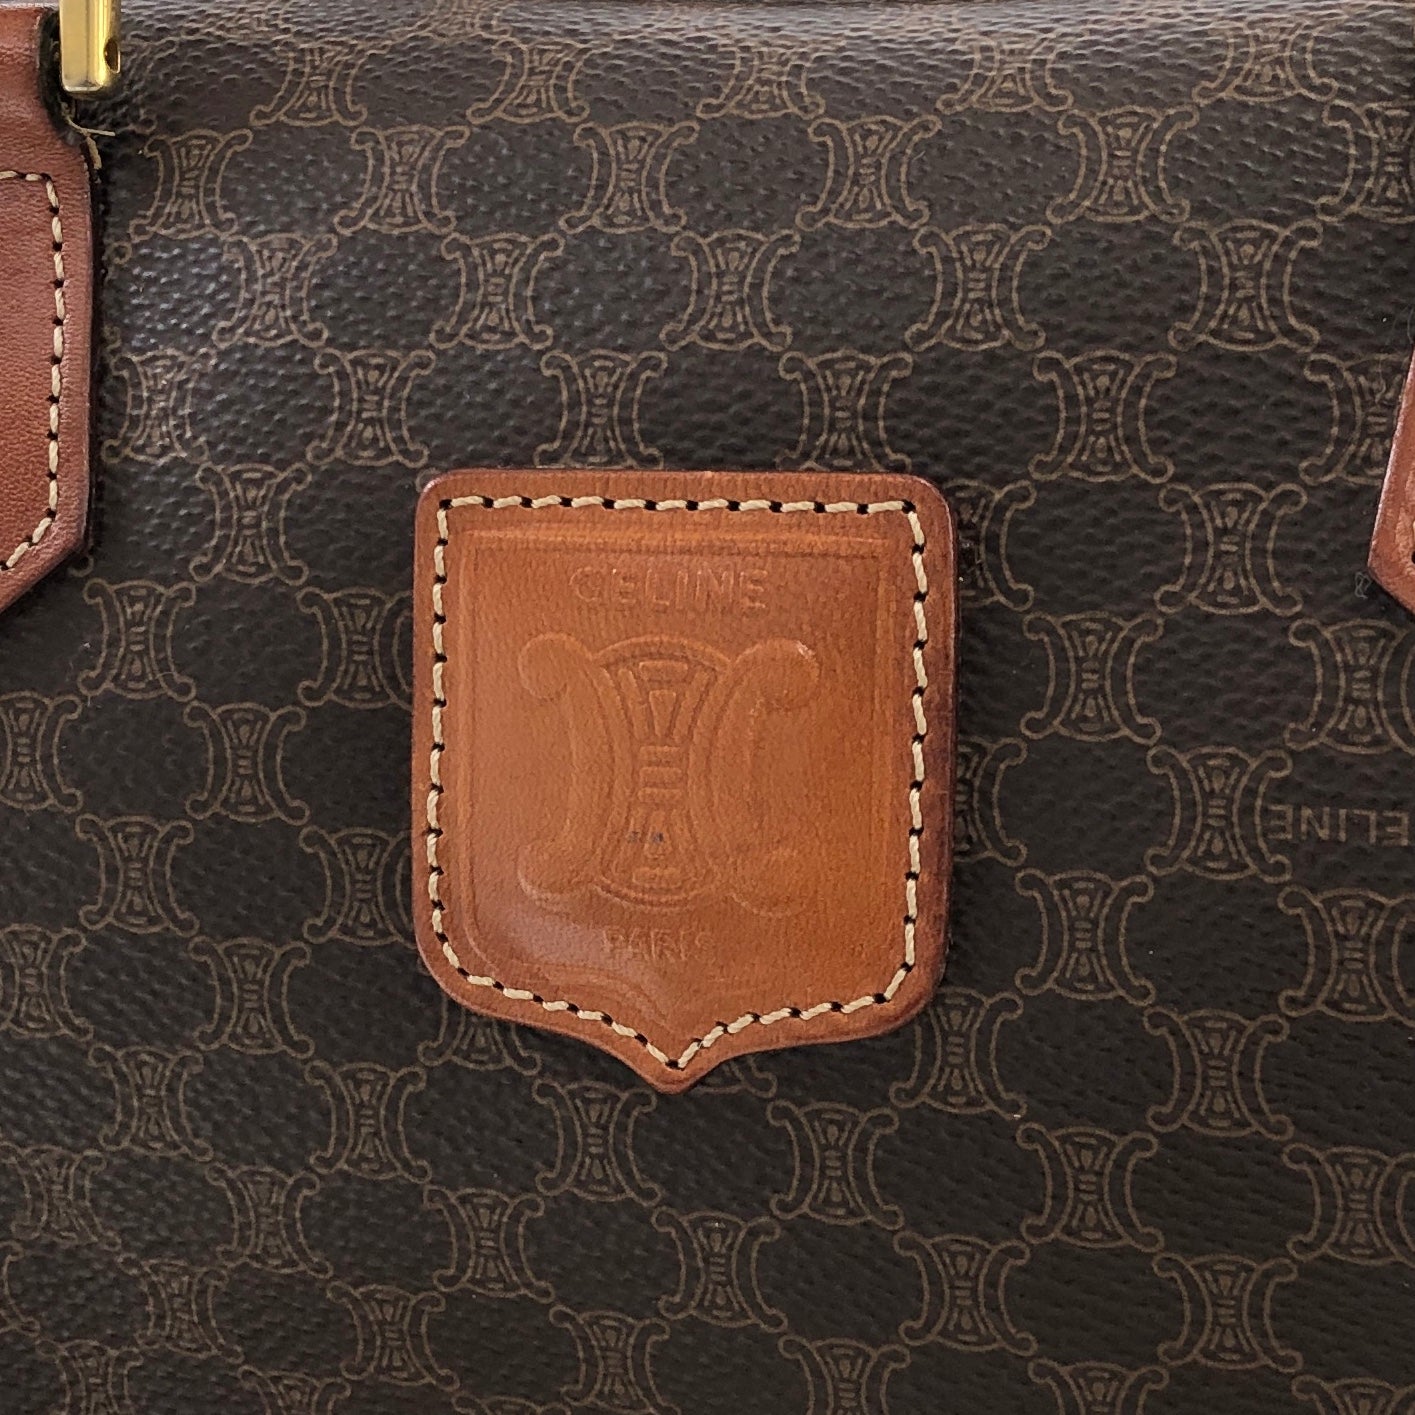 CELINE Macadam PVC Leather Two-way Handbag Shoulder bag Boston bag Brown Vintage znft22